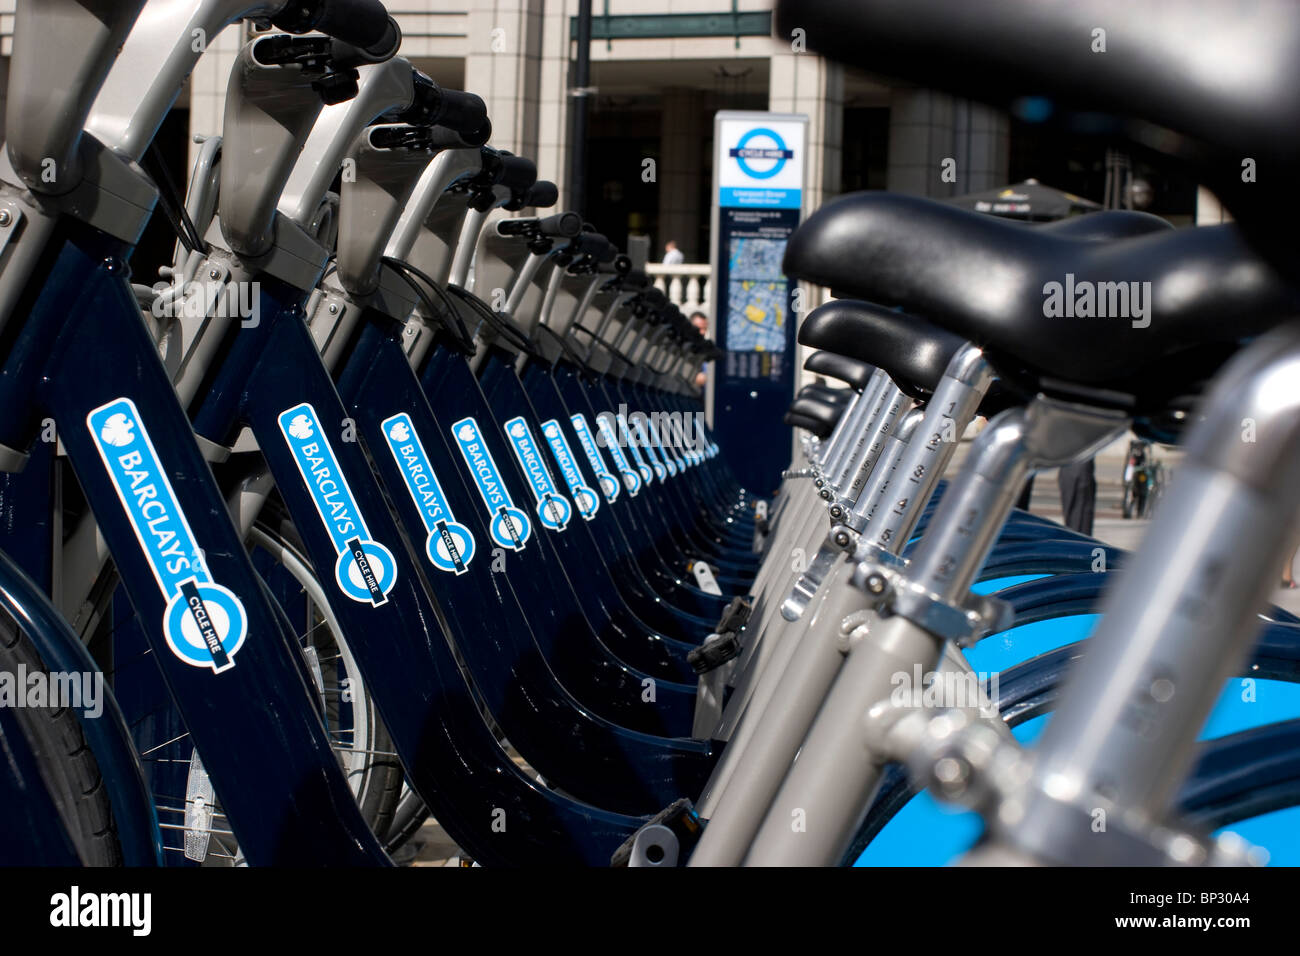 Tfl, Barclays Cycle Hire, Boris bikes, Londres location de vélos, instauré par le maire Boris Johnson Banque D'Images